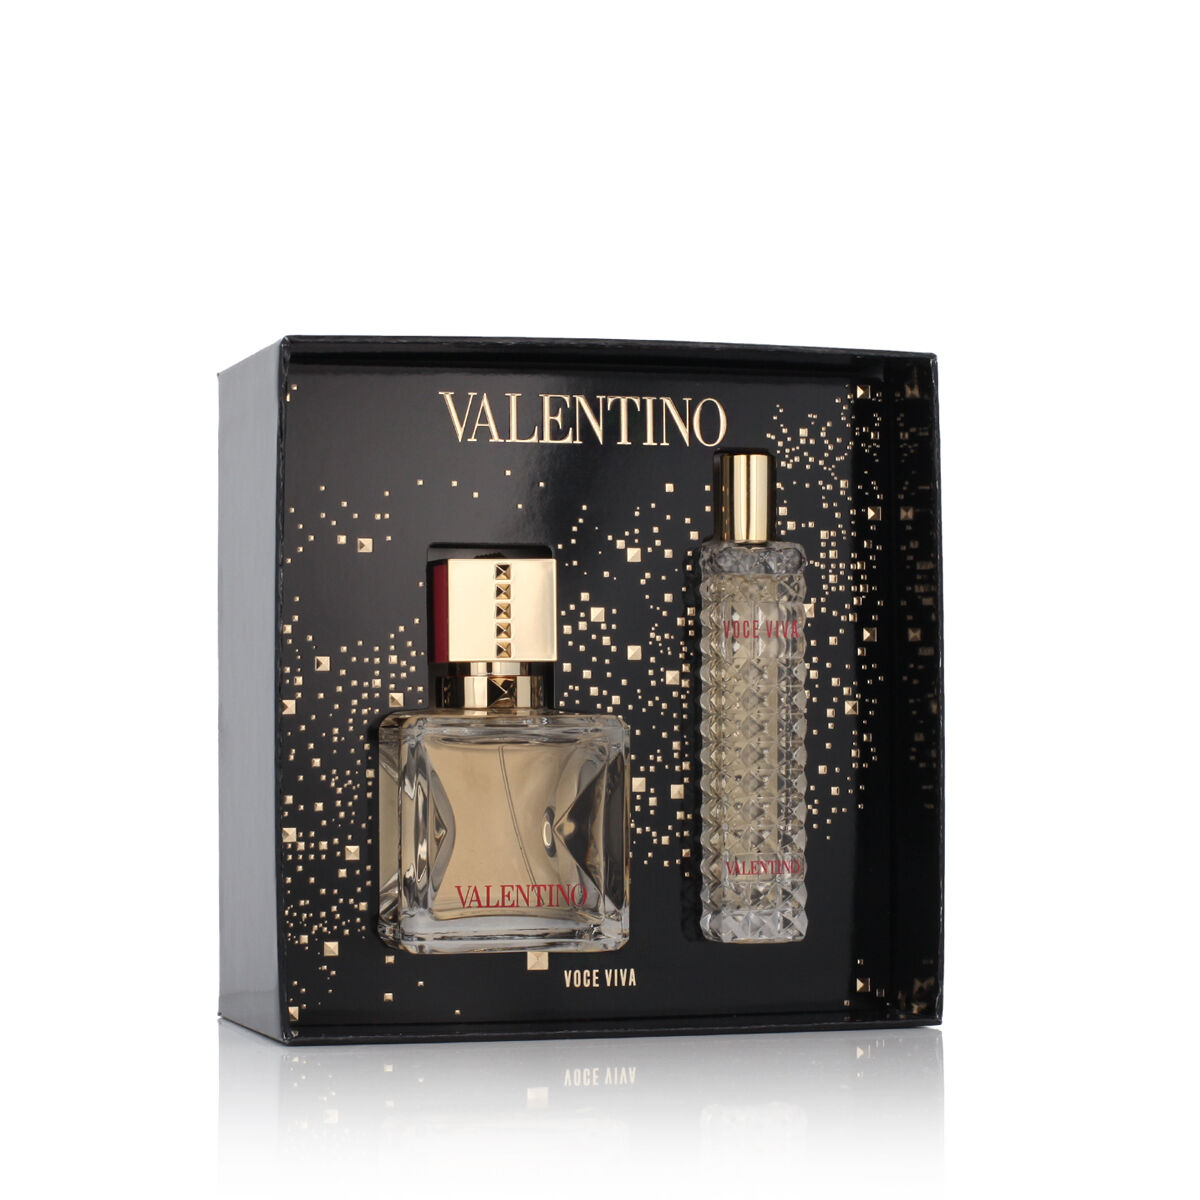 Set de Parfum Femme Valentino 2 Pièces Voce Viva